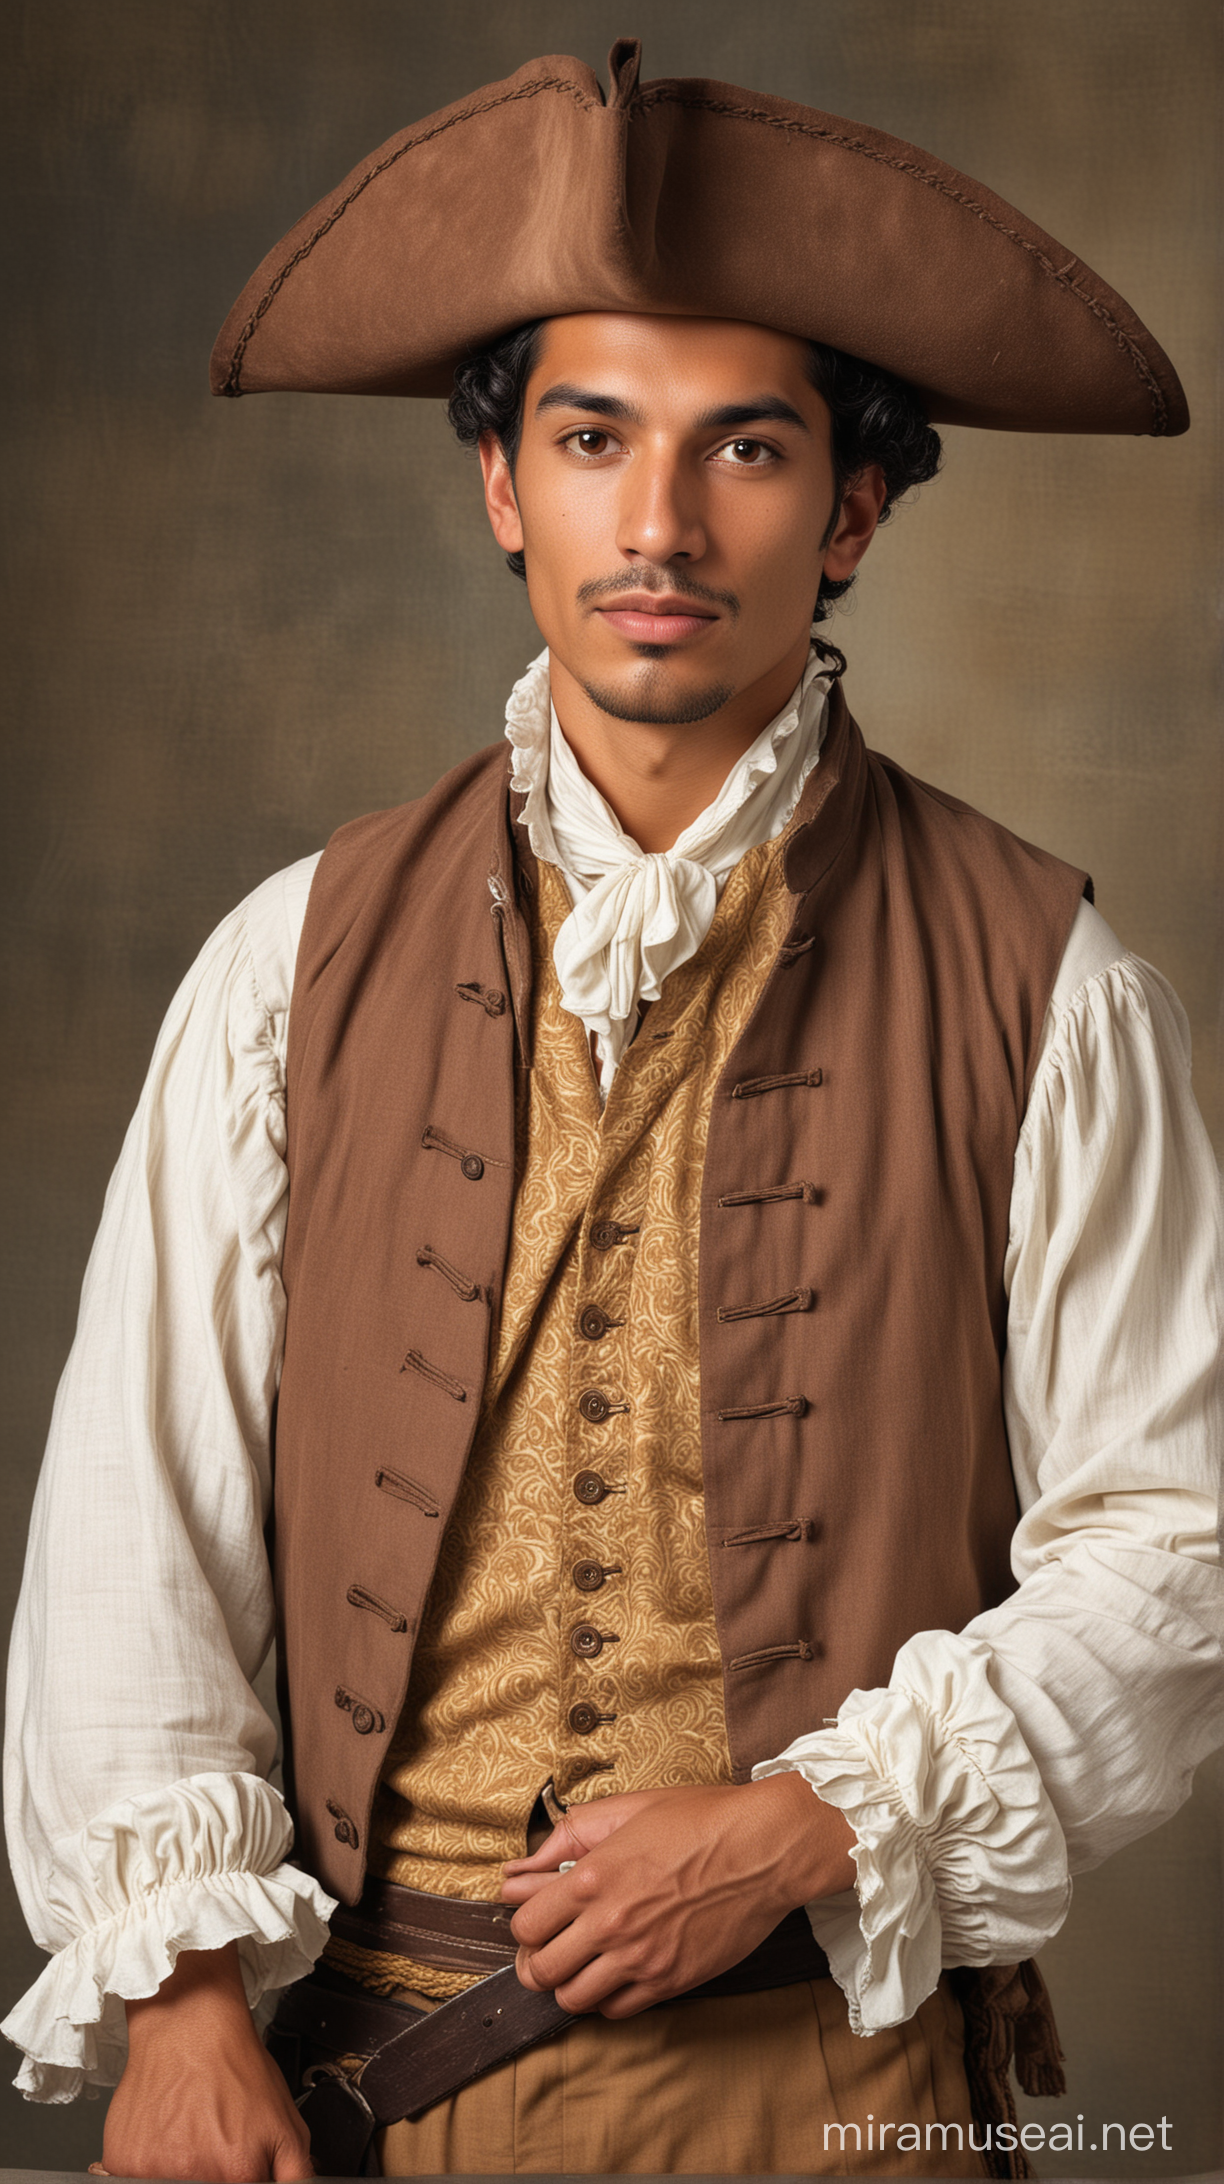 Latino Man in 18th Century Attire